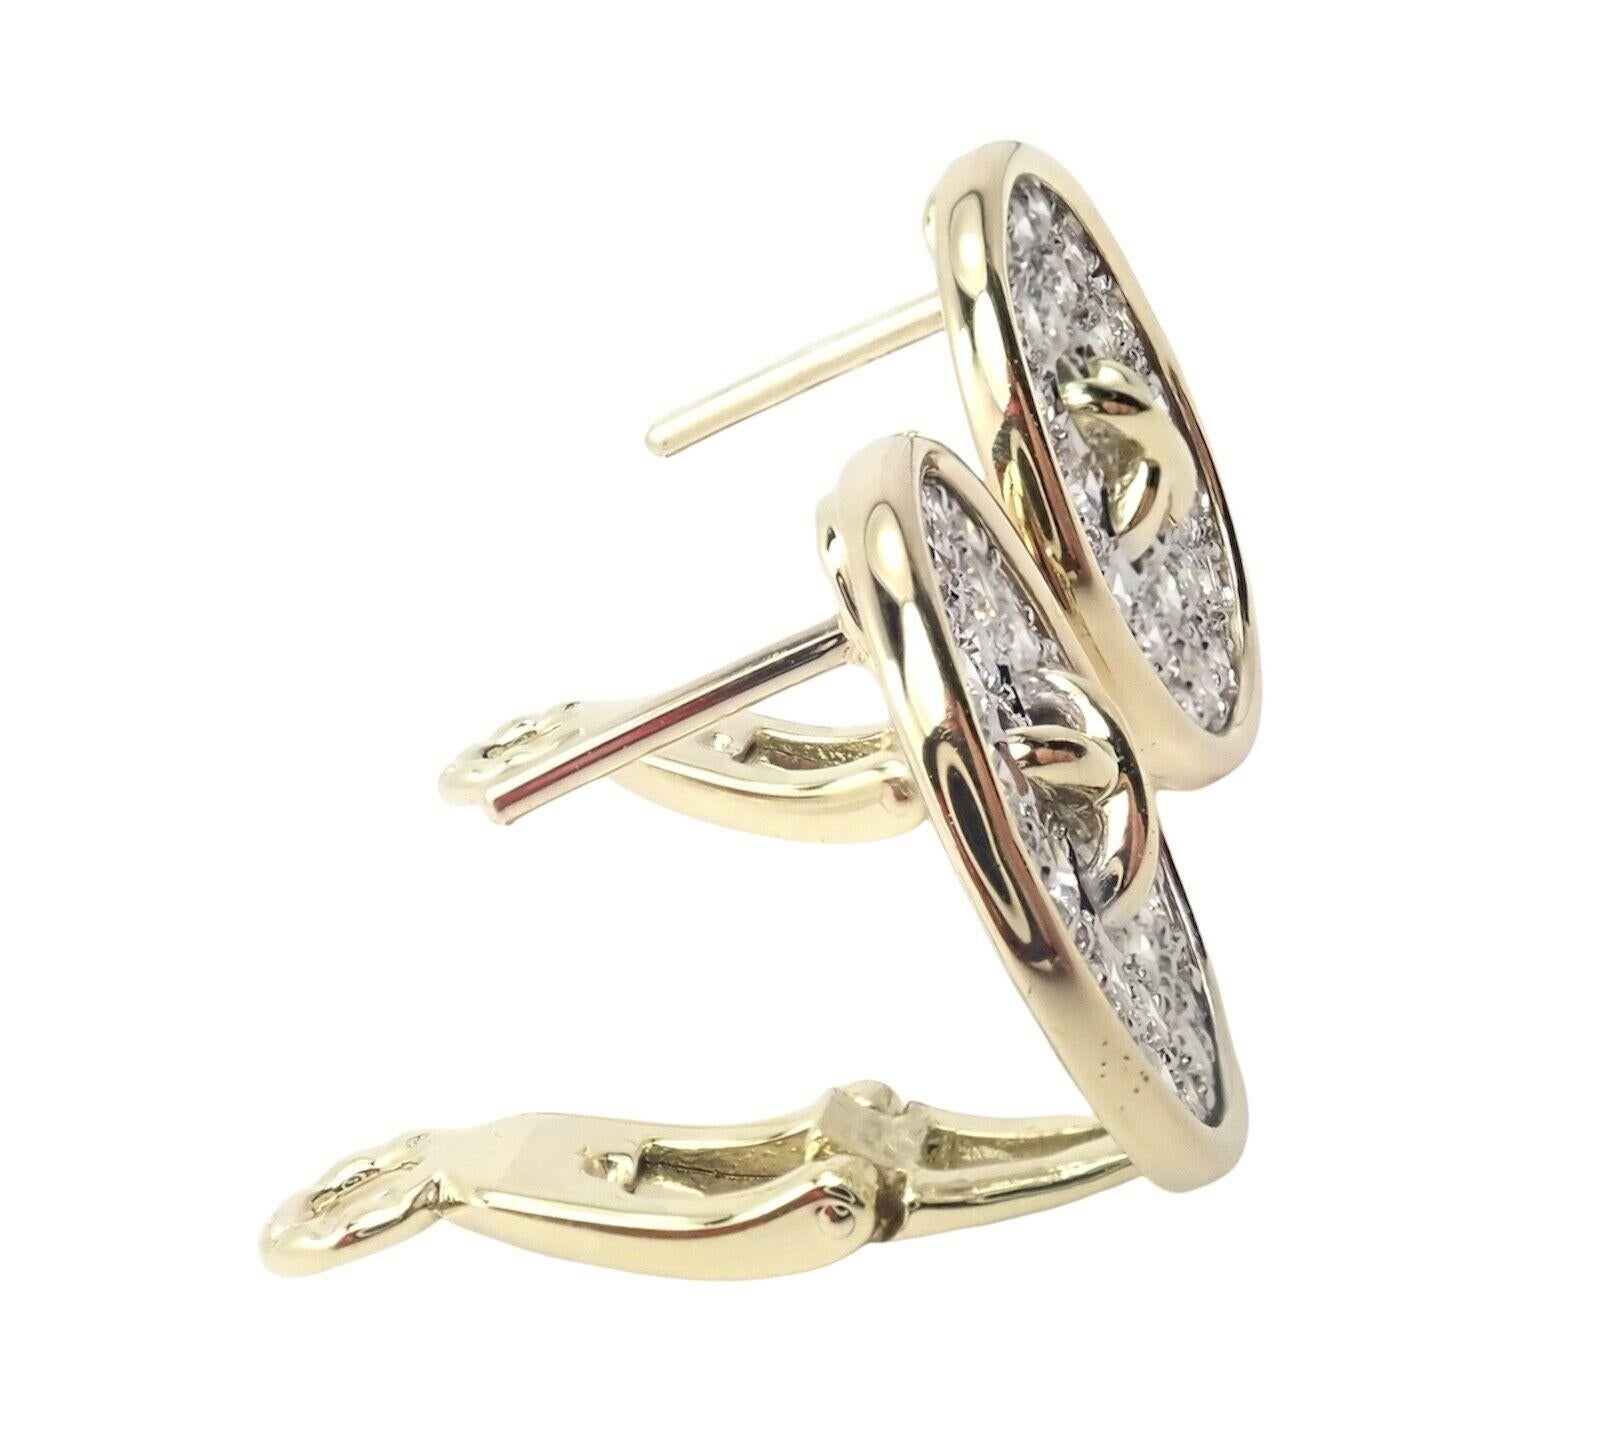 18k Gelbgold Diamant Signatur Knopf Ohrringe von Tiffany & Co. 
Mit 56 runden Diamanten im Brillantschliff VS1 Klarheit, G Farbe Gesamtgewicht ca. 2,00ctw
Diese Ohrringe sind für gepiercte Ohren geeignet.
Einzelheiten: 
Gewicht: 8,9